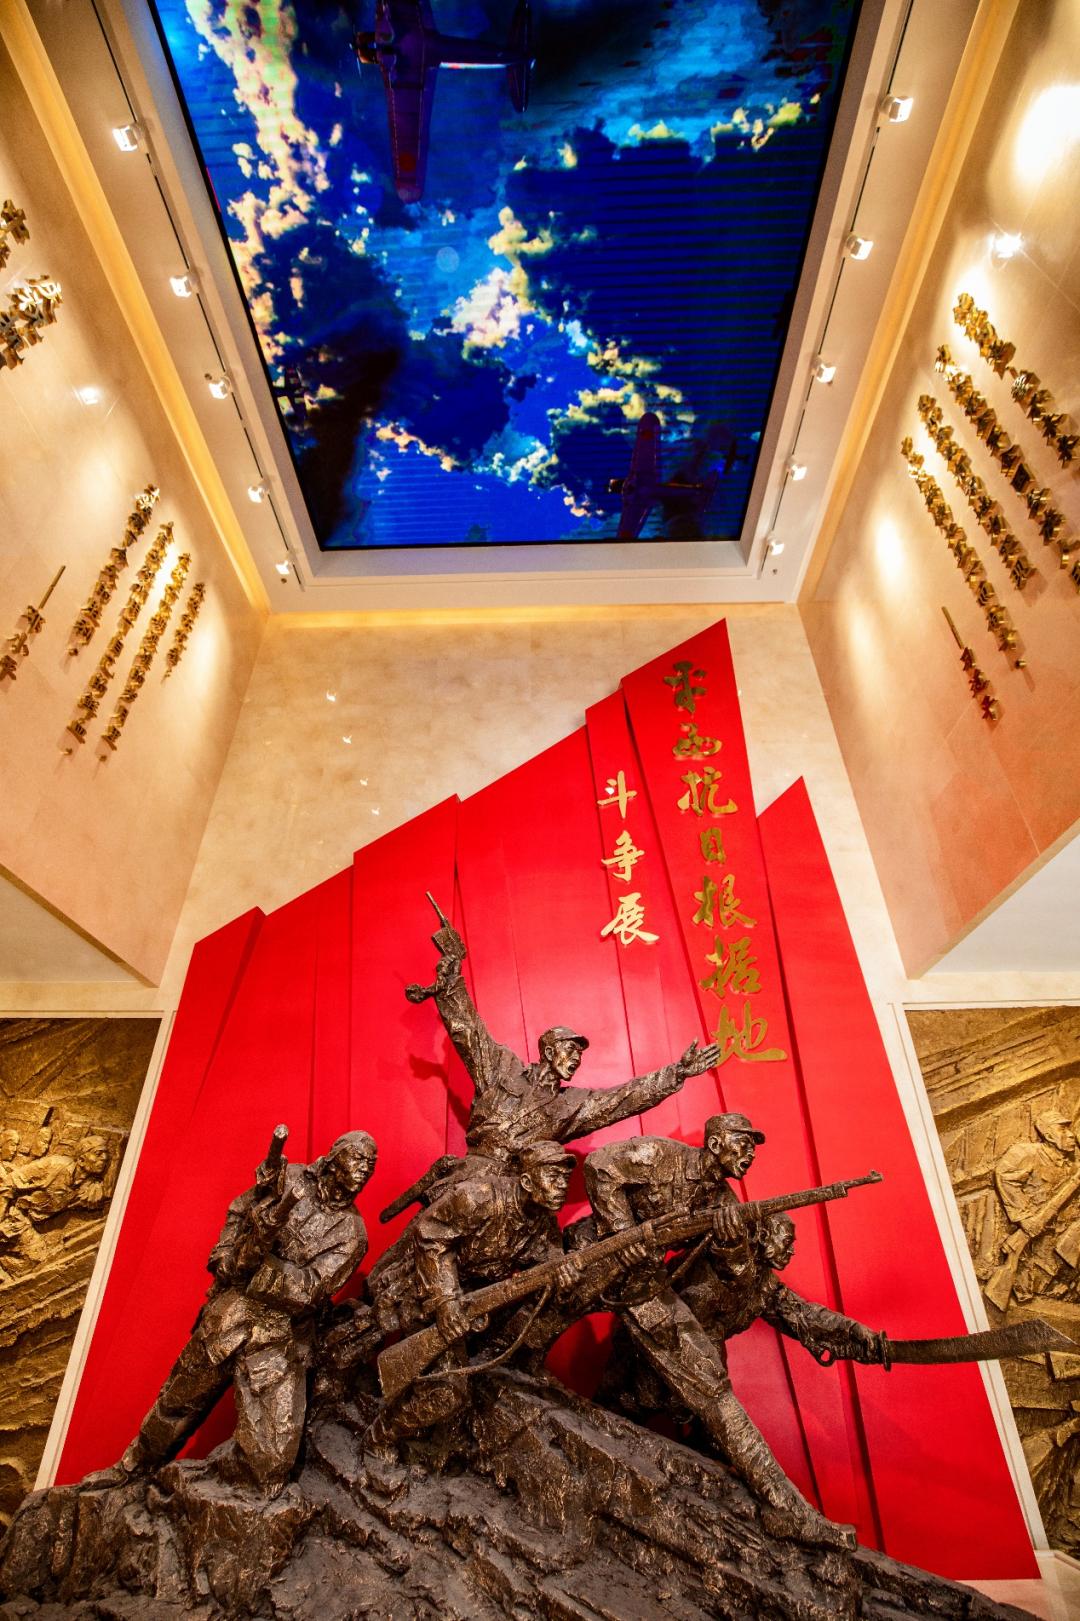 福州红色纪念馆图片